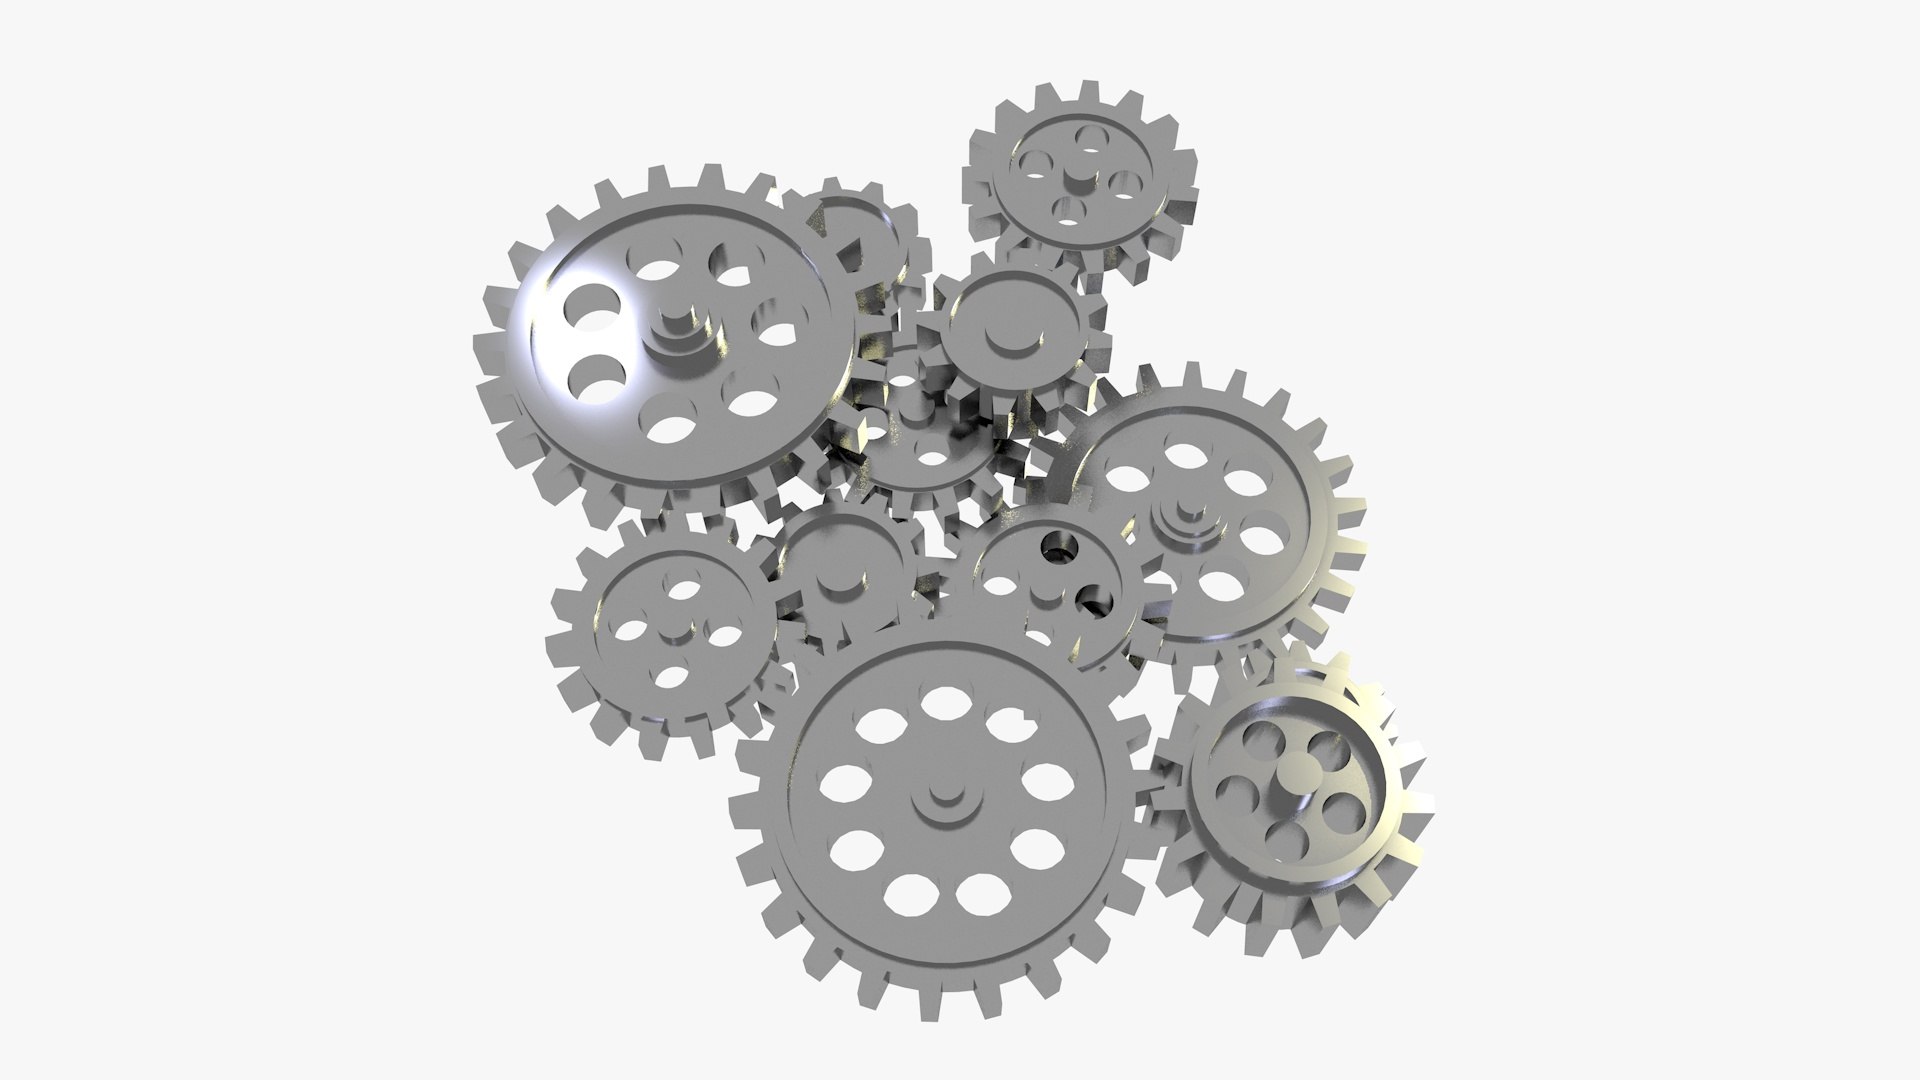 Mechanical gears 3d model stock illustration. Illustration of wheel -  109174635